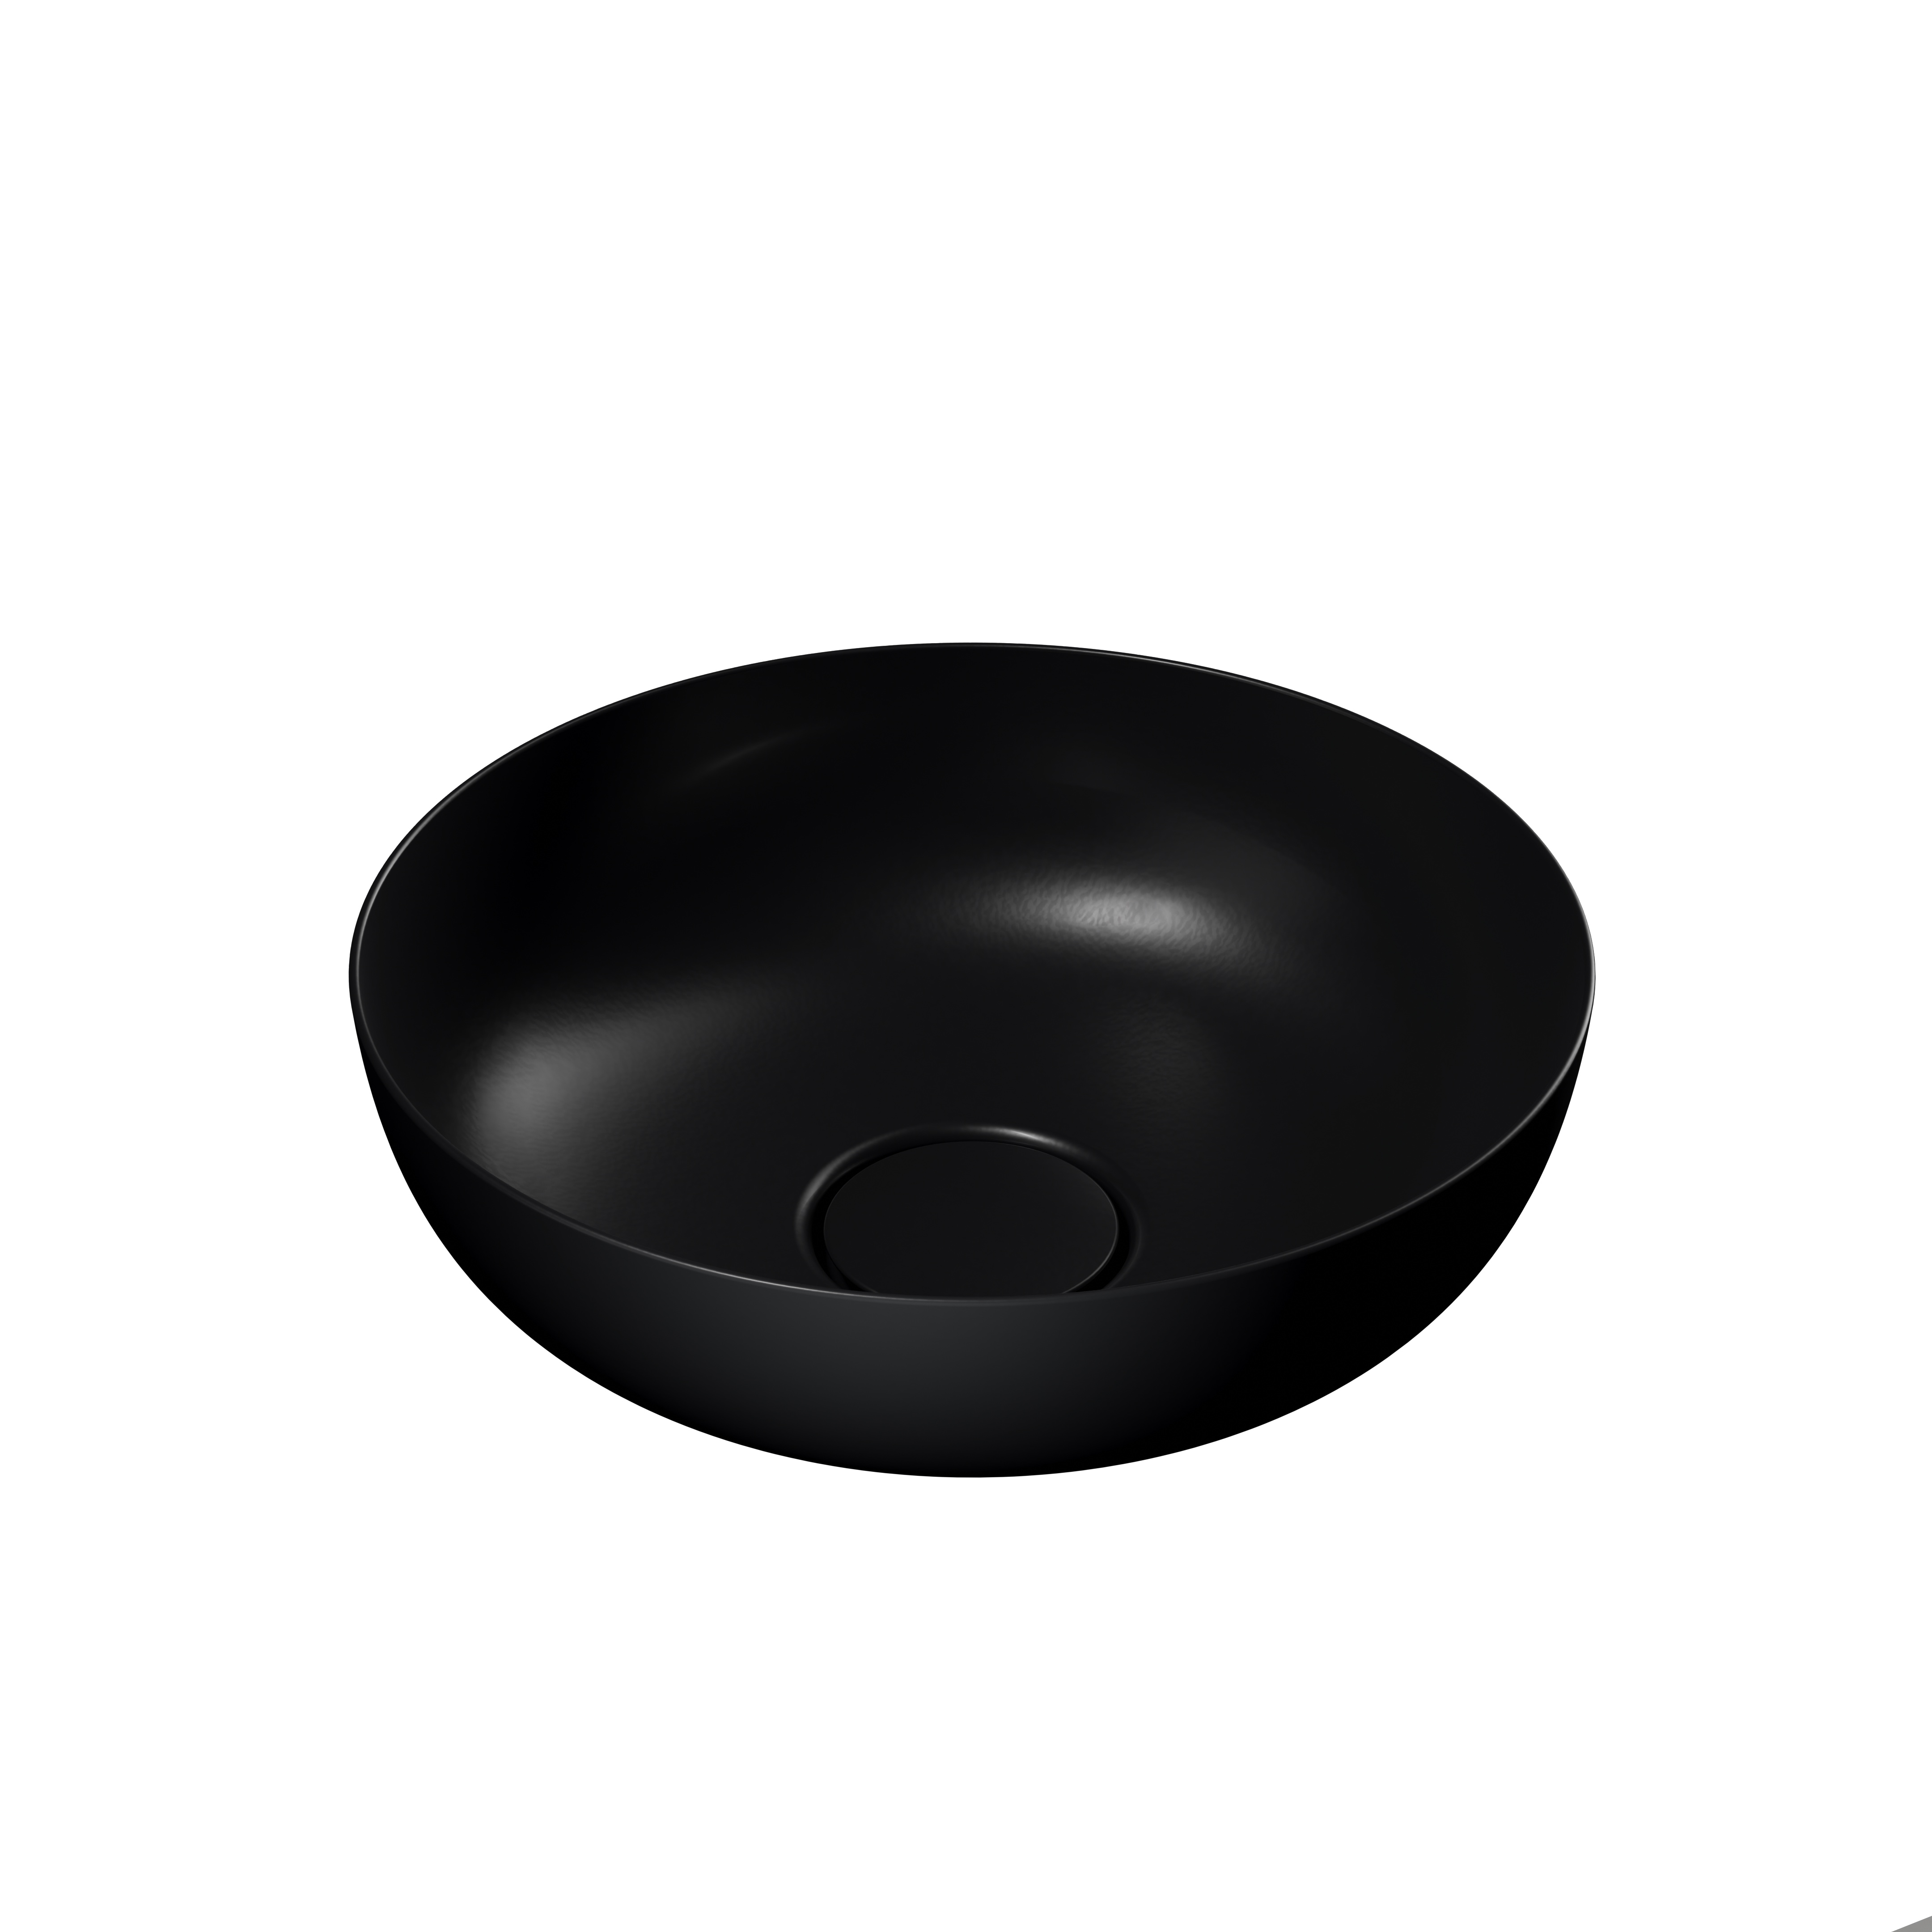 Waschtischschale „Miena“ ⌀ 31 cm in schwarz matt, mit Perl-Effekt